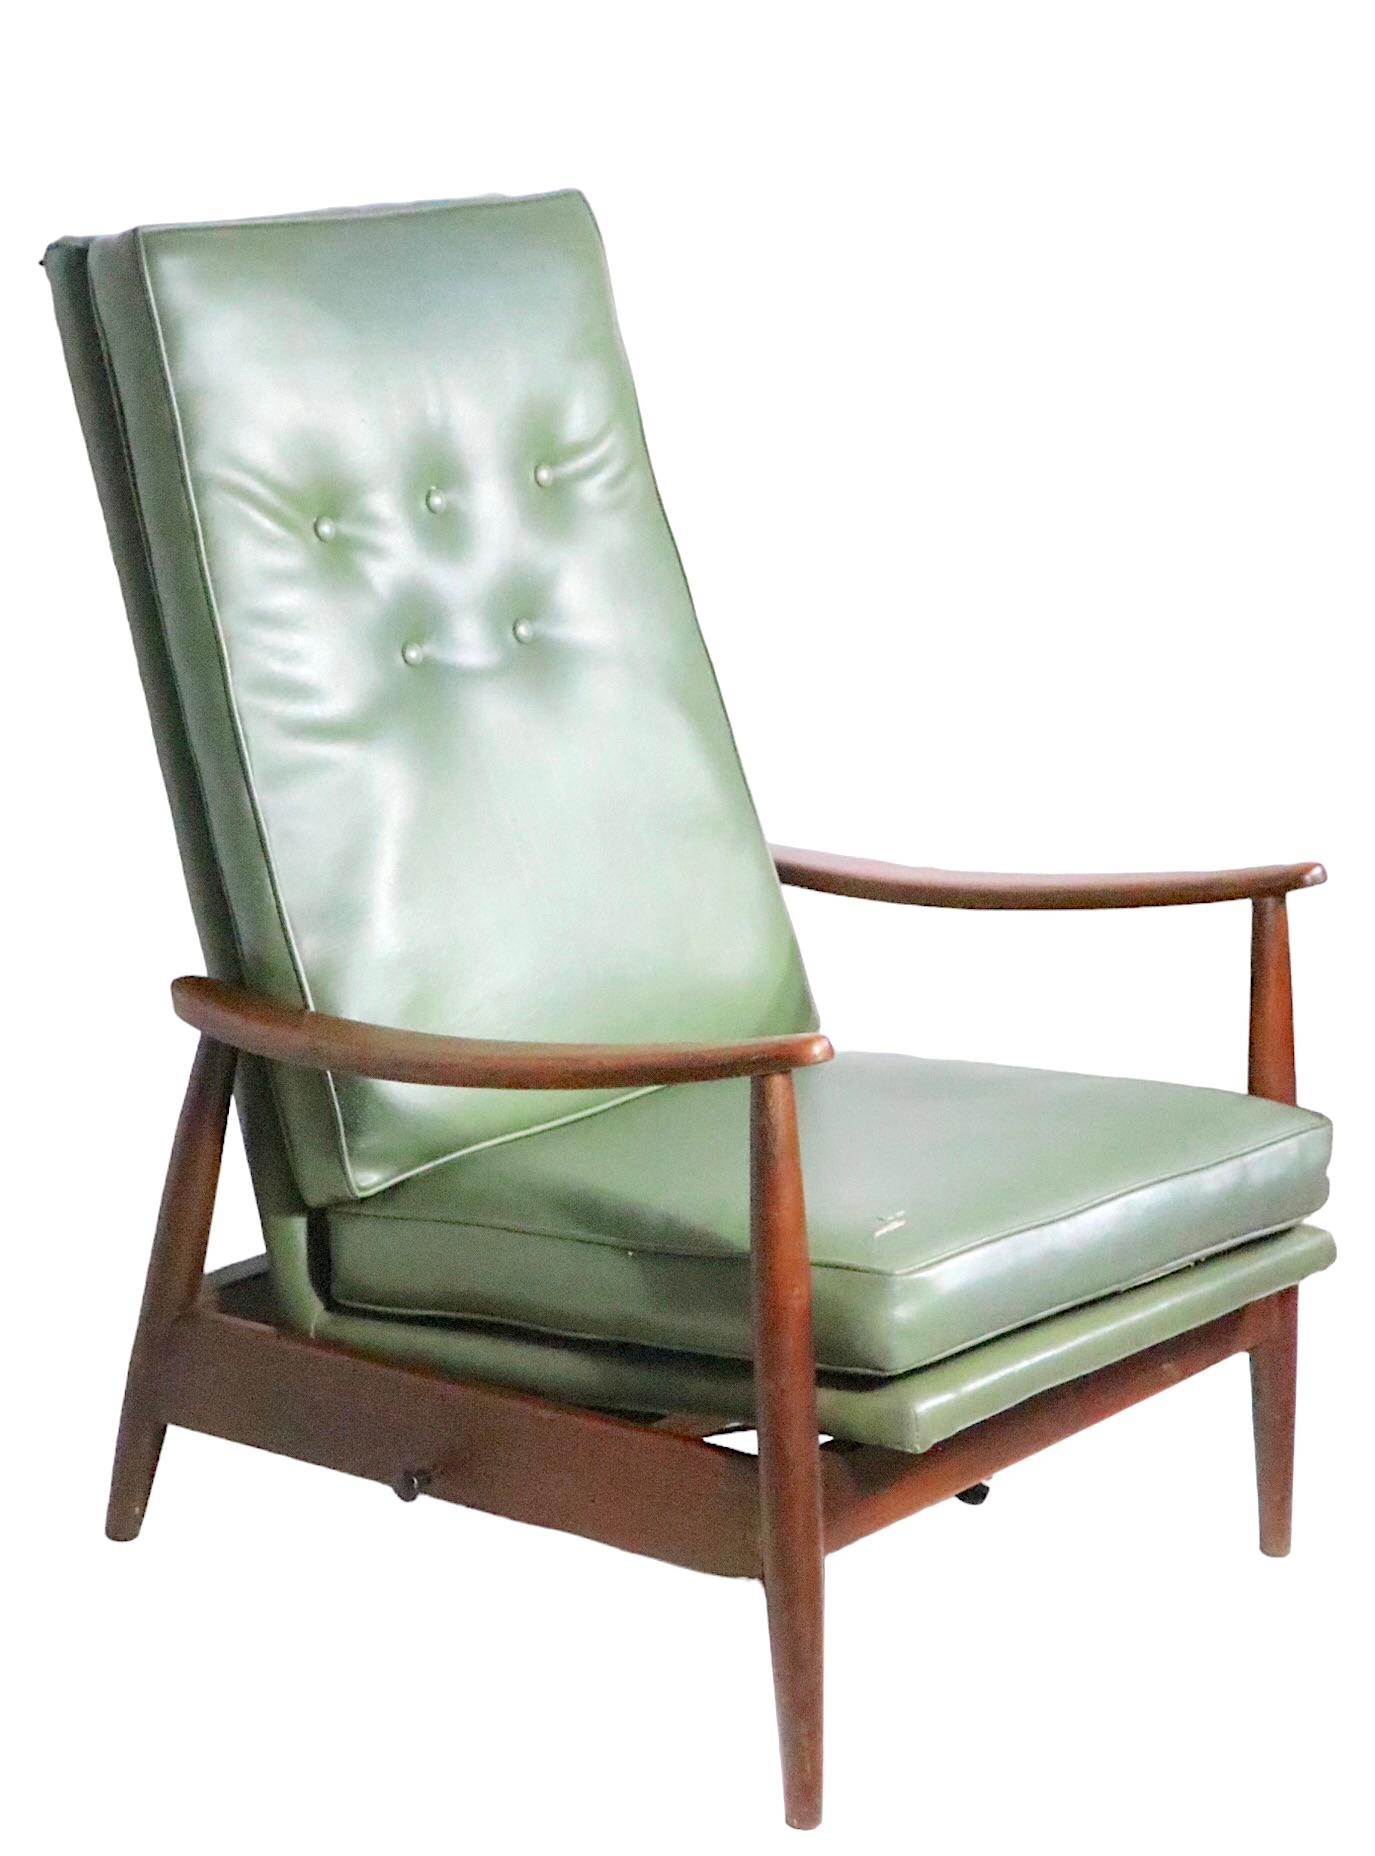  Milo Baughman für James Inc. Liegestuhl,  Plattformwippe, ca. 1950er Jahre. Dieser Stuhl hat eine mit Vinyl gepolsterte hohe Rückenlehne und Sitzfläche, und  freiliegender architektonischer Holzrahmen. Der Stuhl ist in einem insgesamt guten